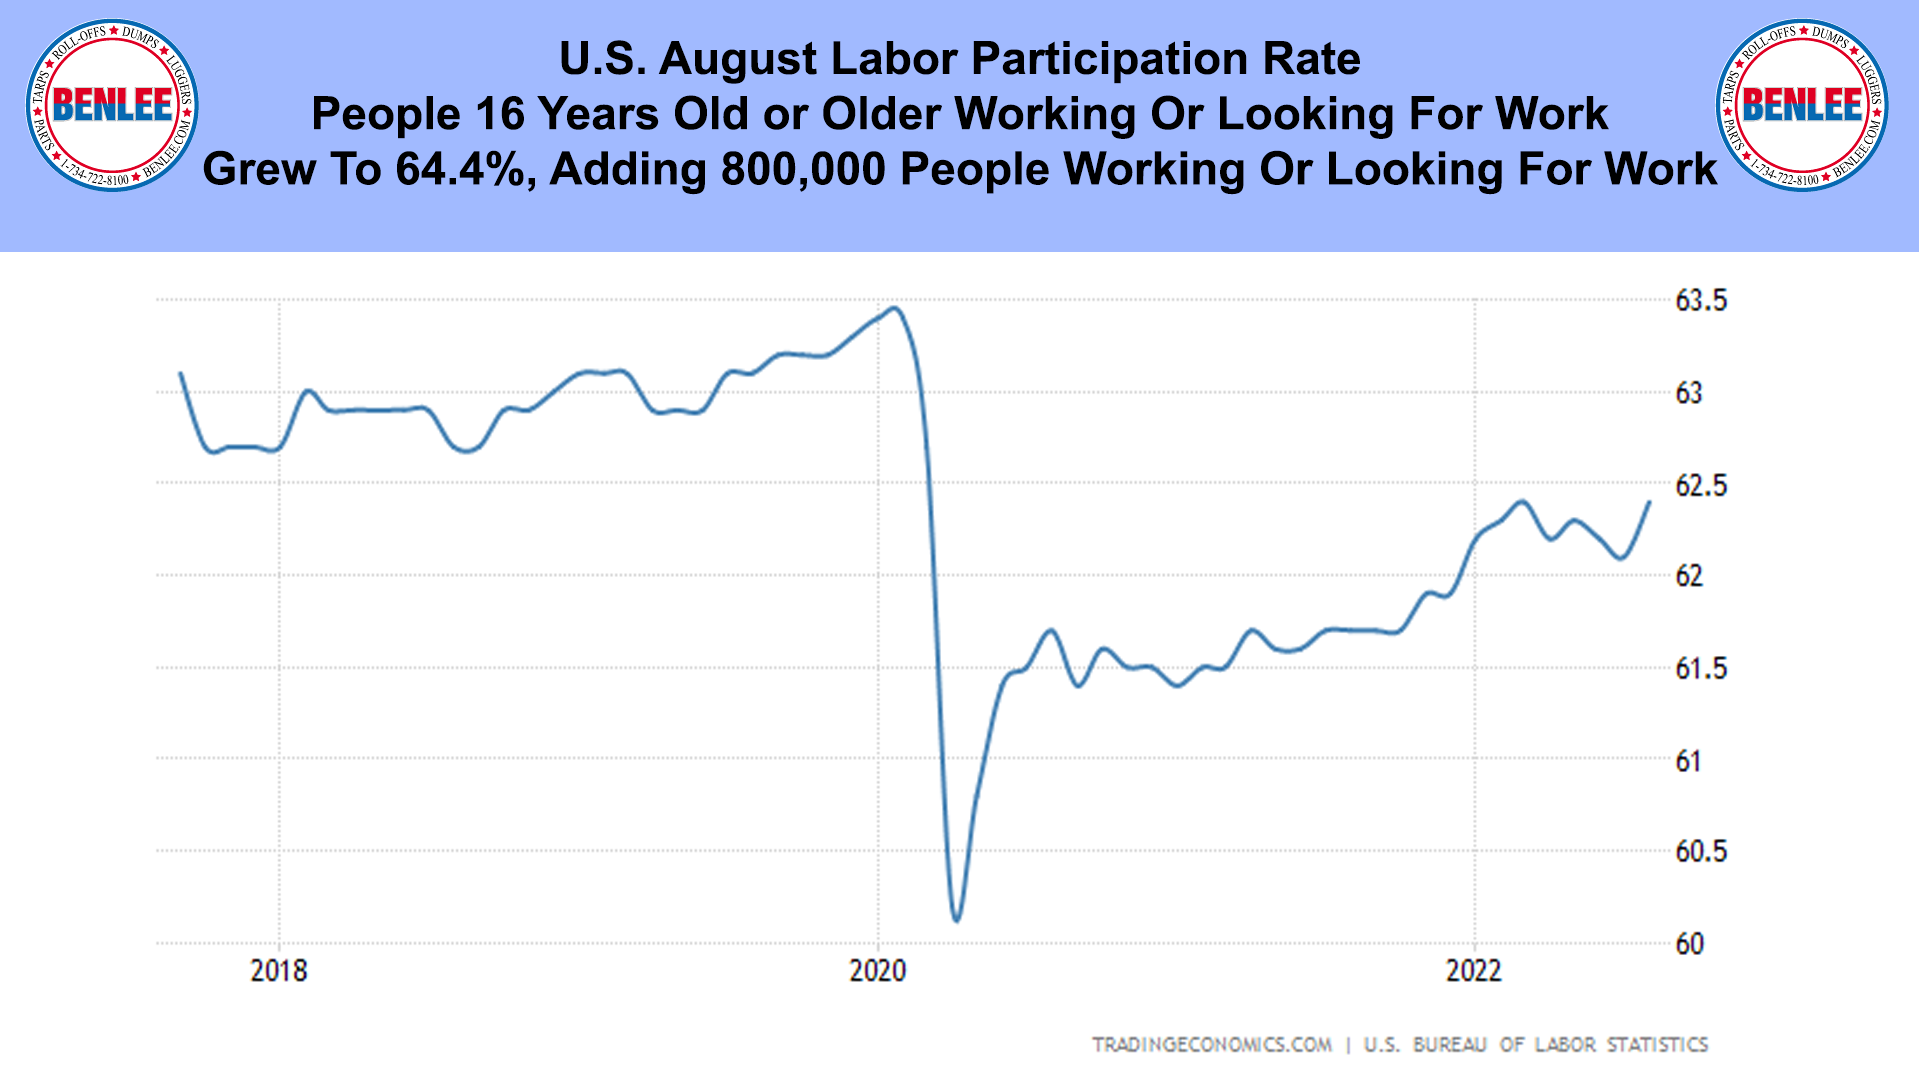 U.S. August Labor Participation Rate